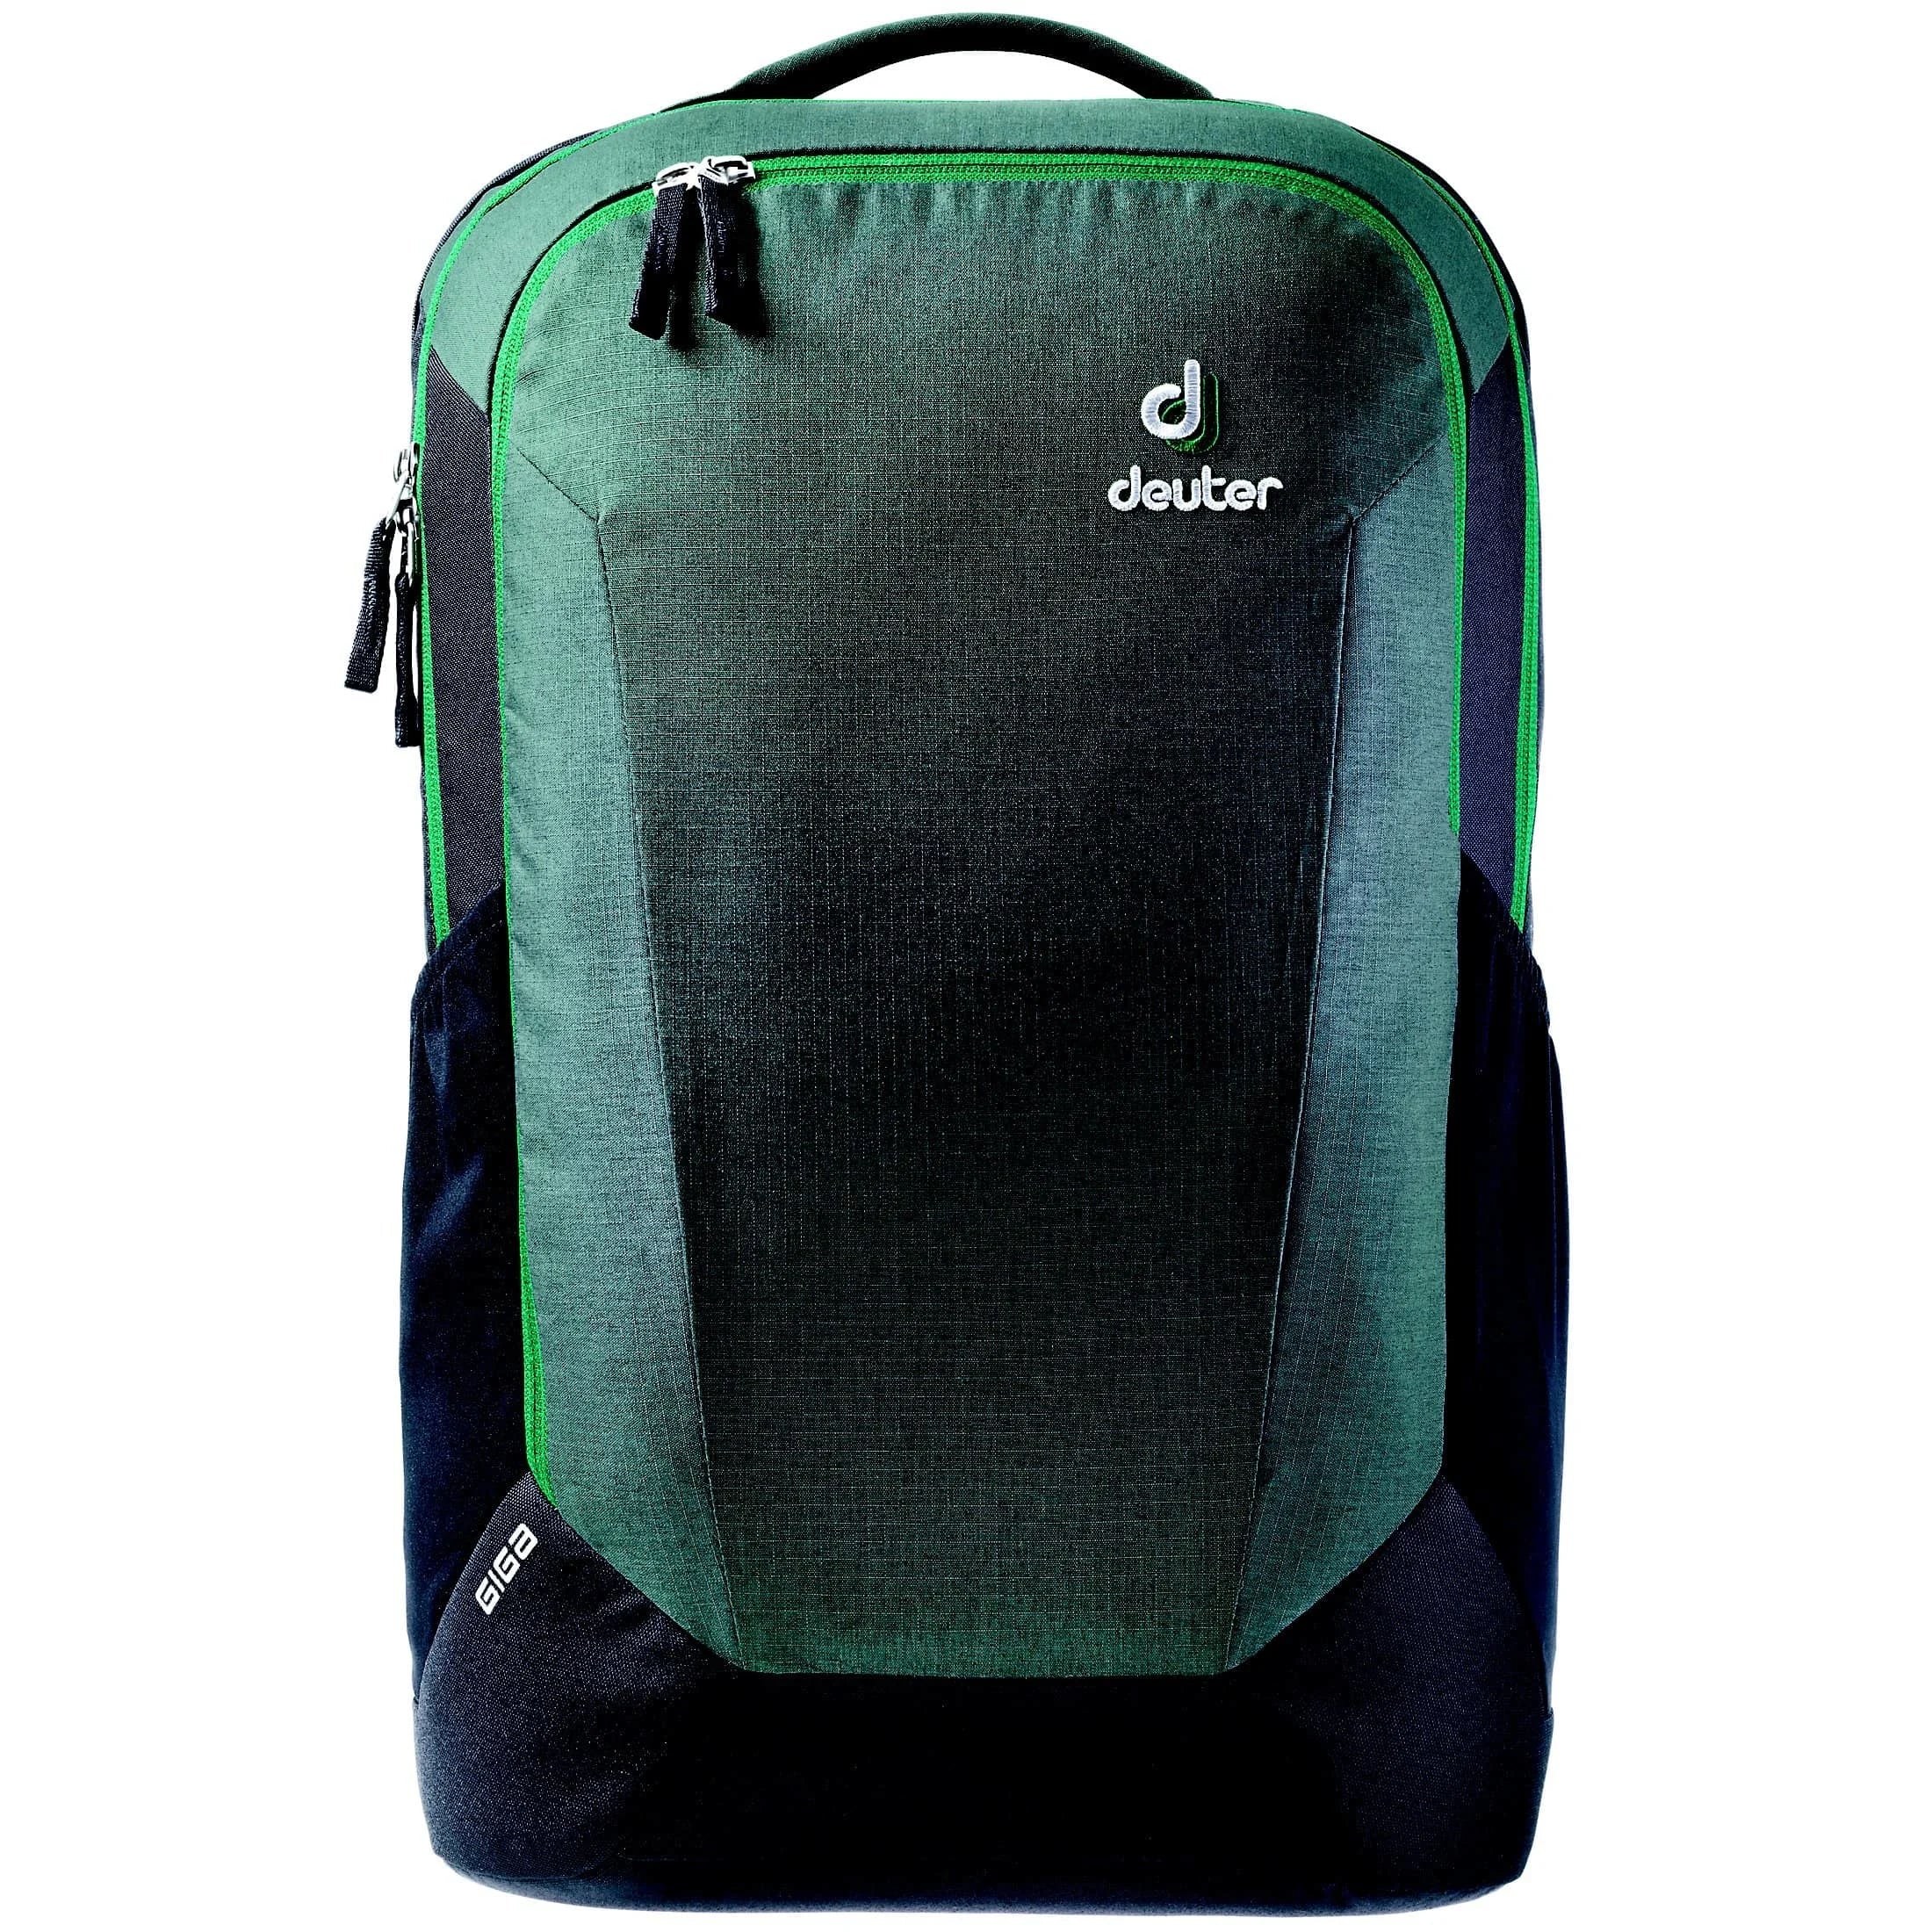 Deuter Daypack Giga backpack 48 cm - marine-ink